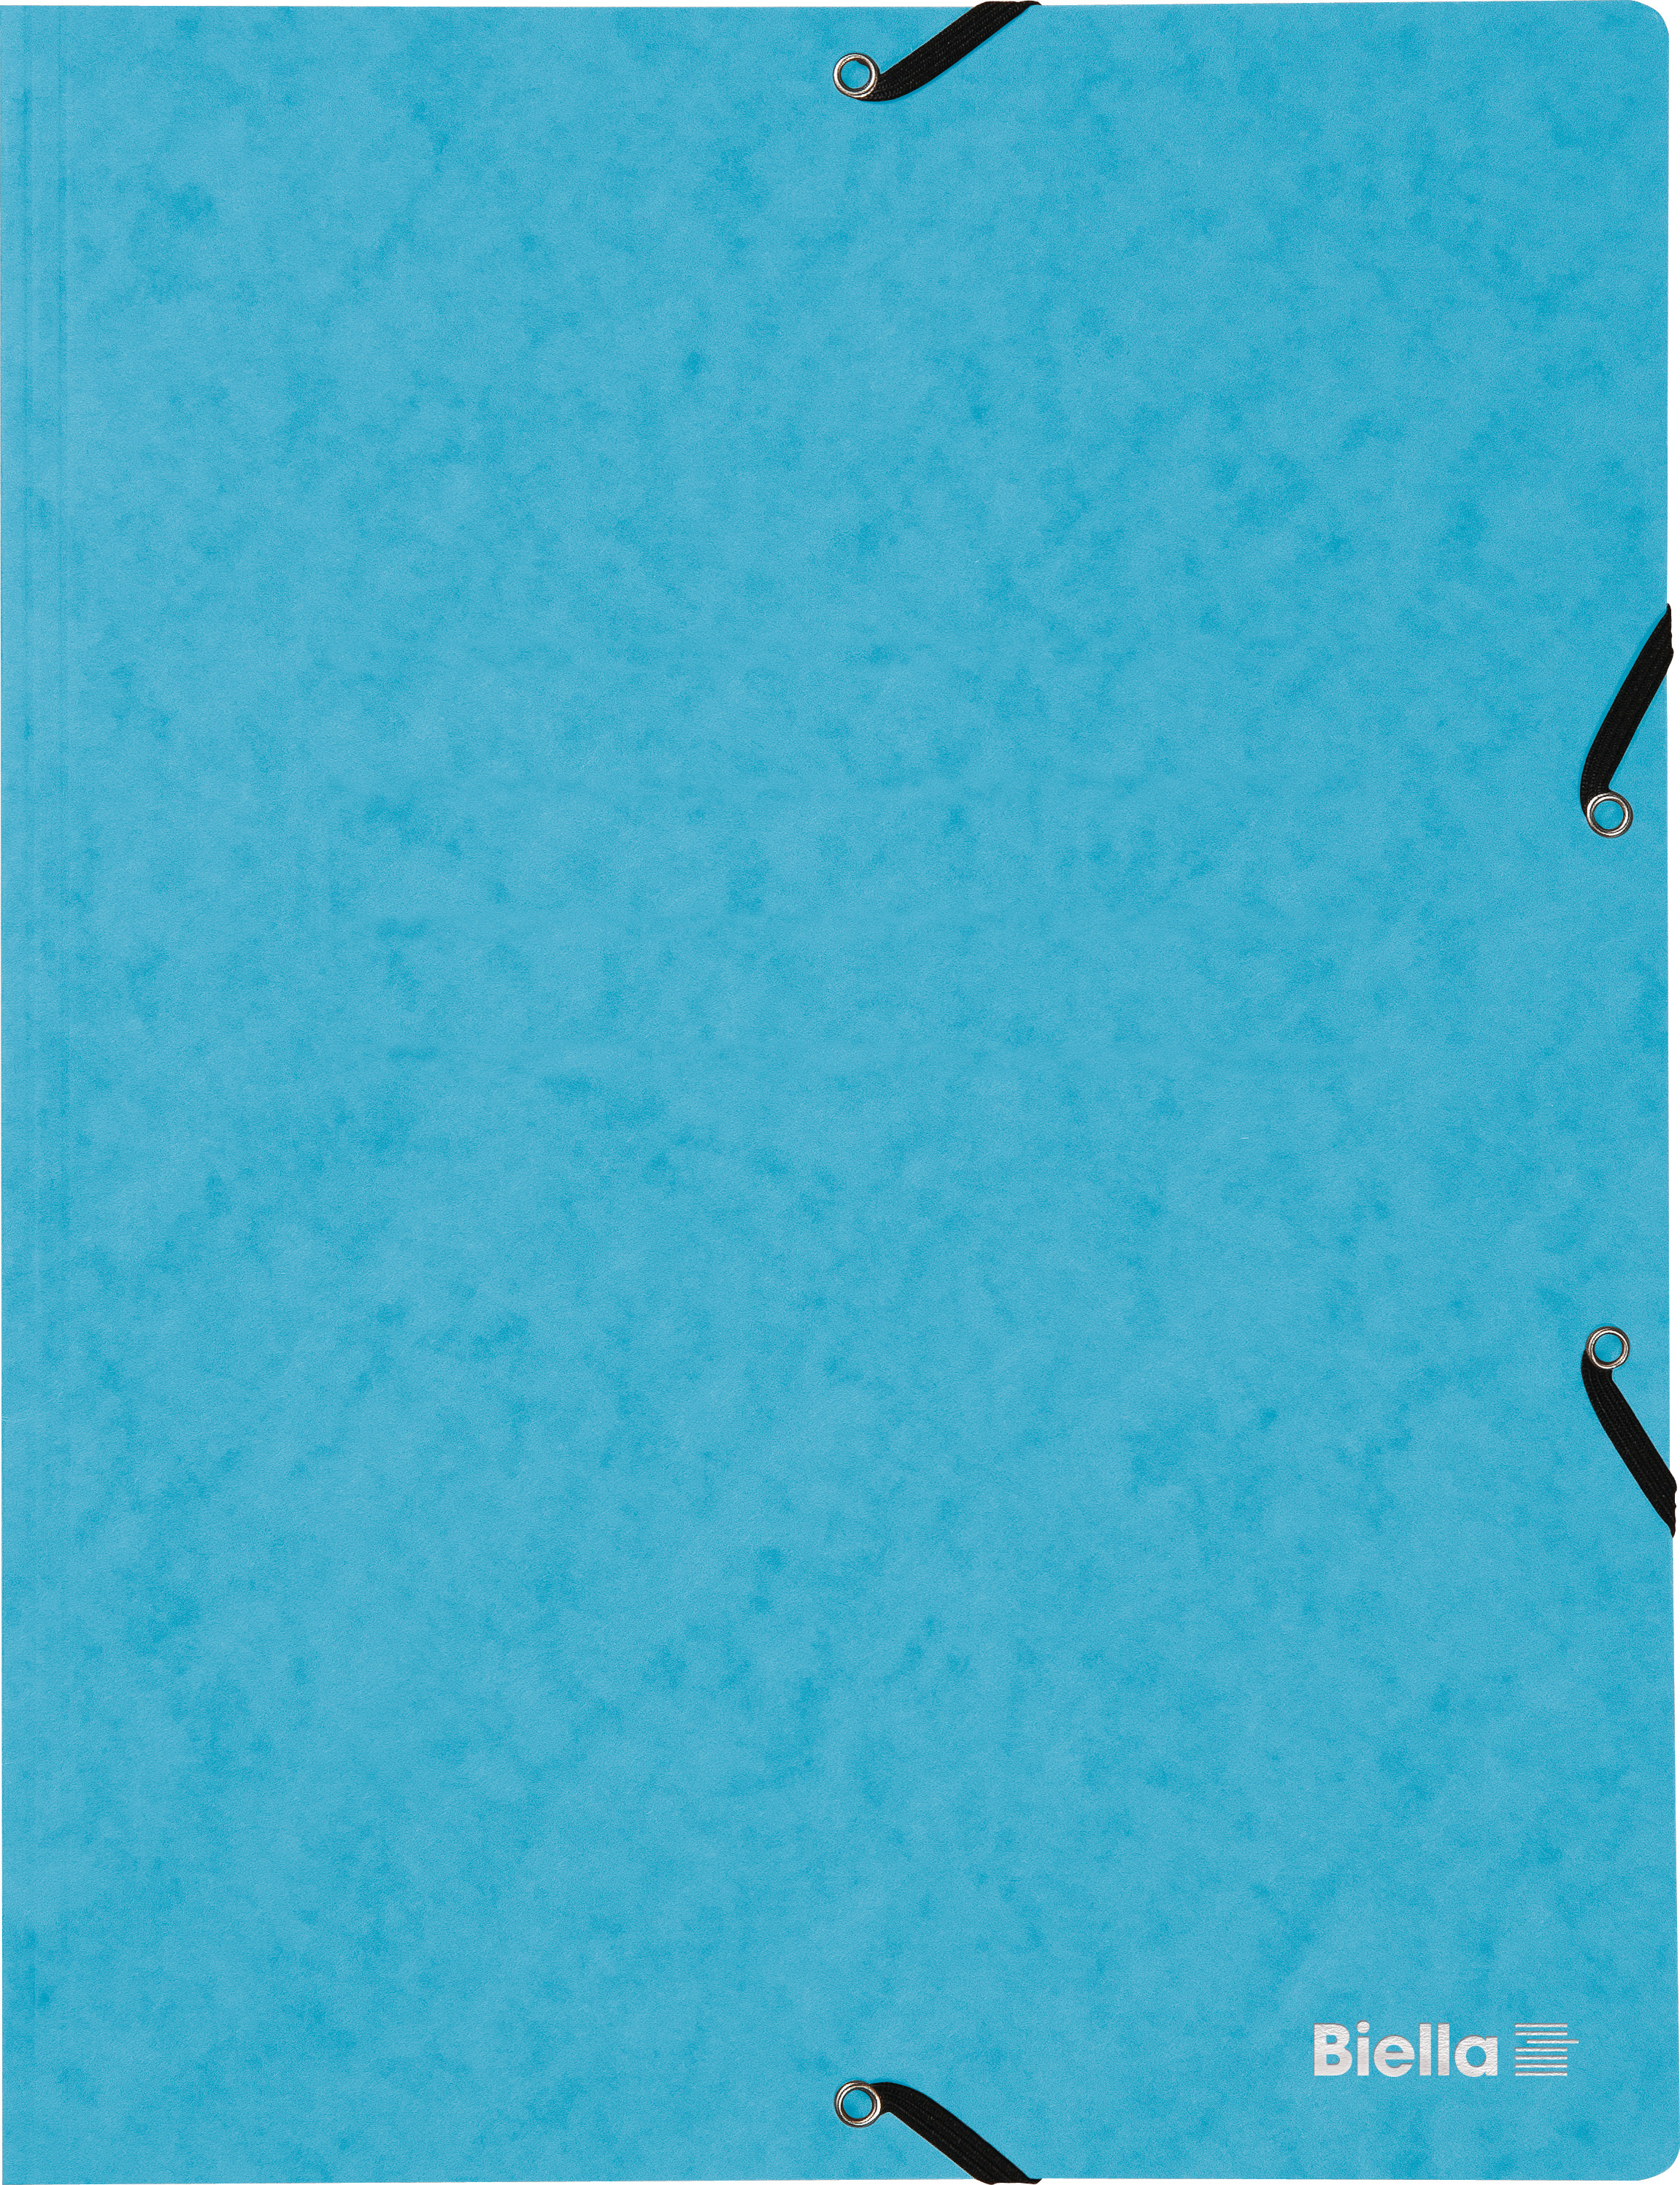 BIELLA Dossier ferm. Élastique A4 17840106U bleu clair, 355gm2 200 flls.